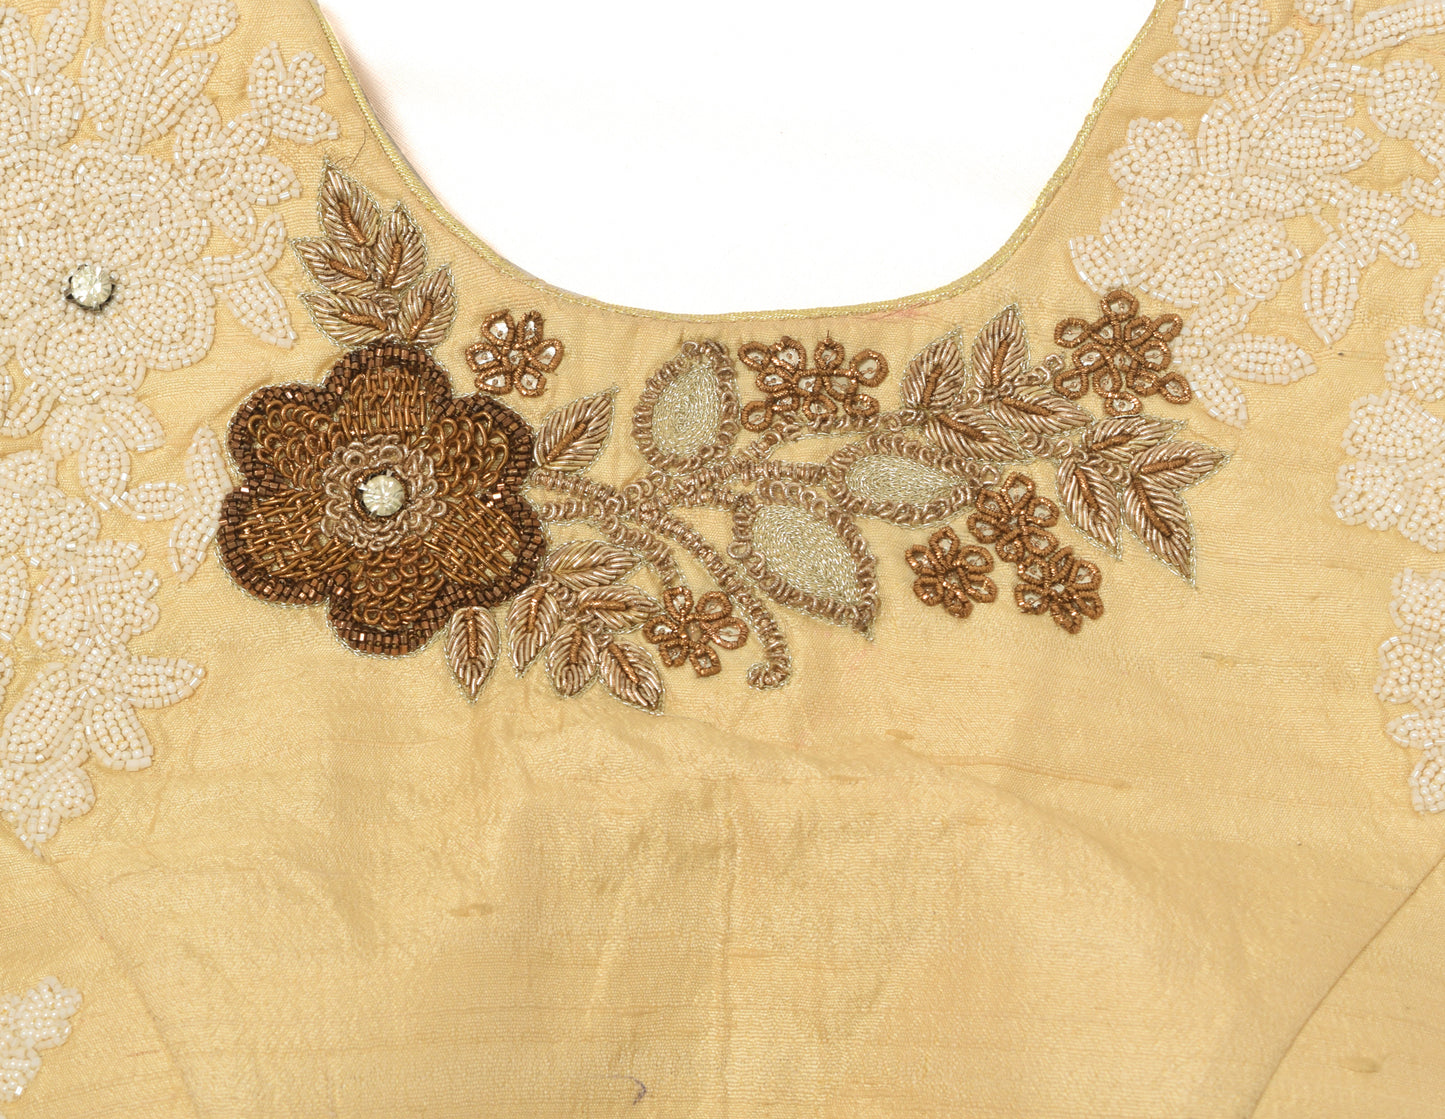 Sushila Vintage Readymade Stitched Sari Blouse Cream Hand Beaded Designer Choli